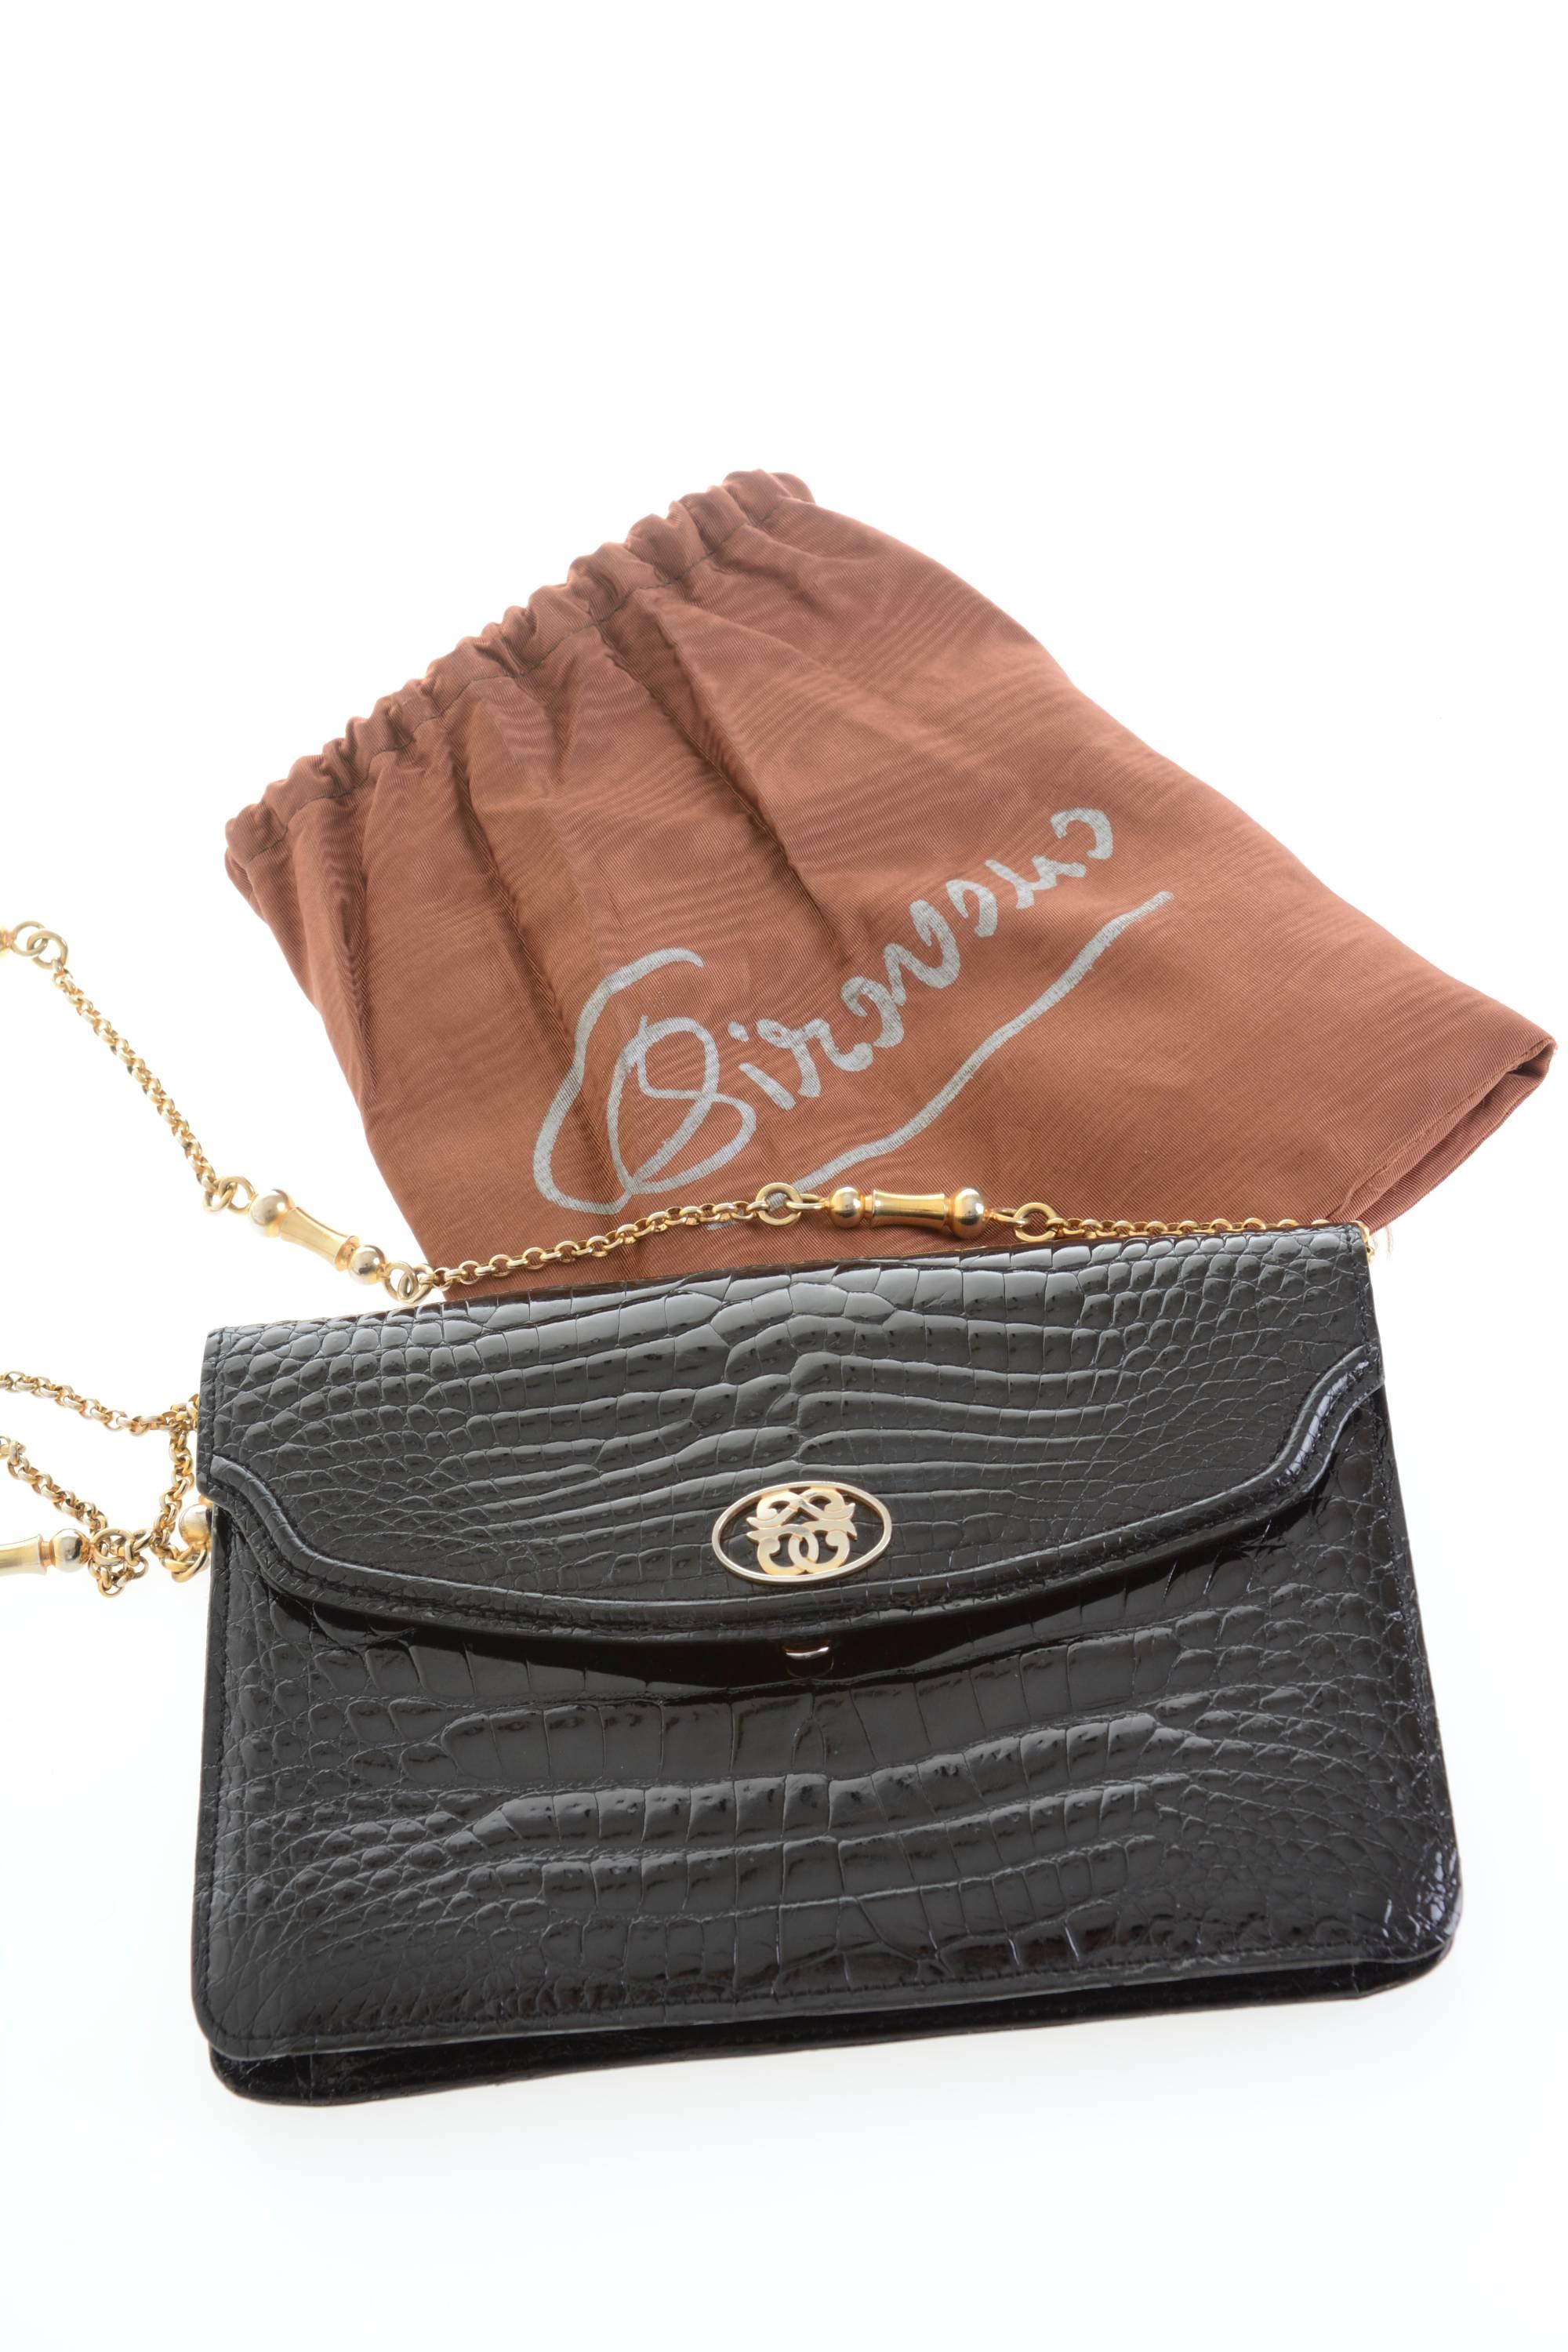 1960s PIROVANO Italian Couture Black Crocodile Clutch Shoulder Bag For Sale 3